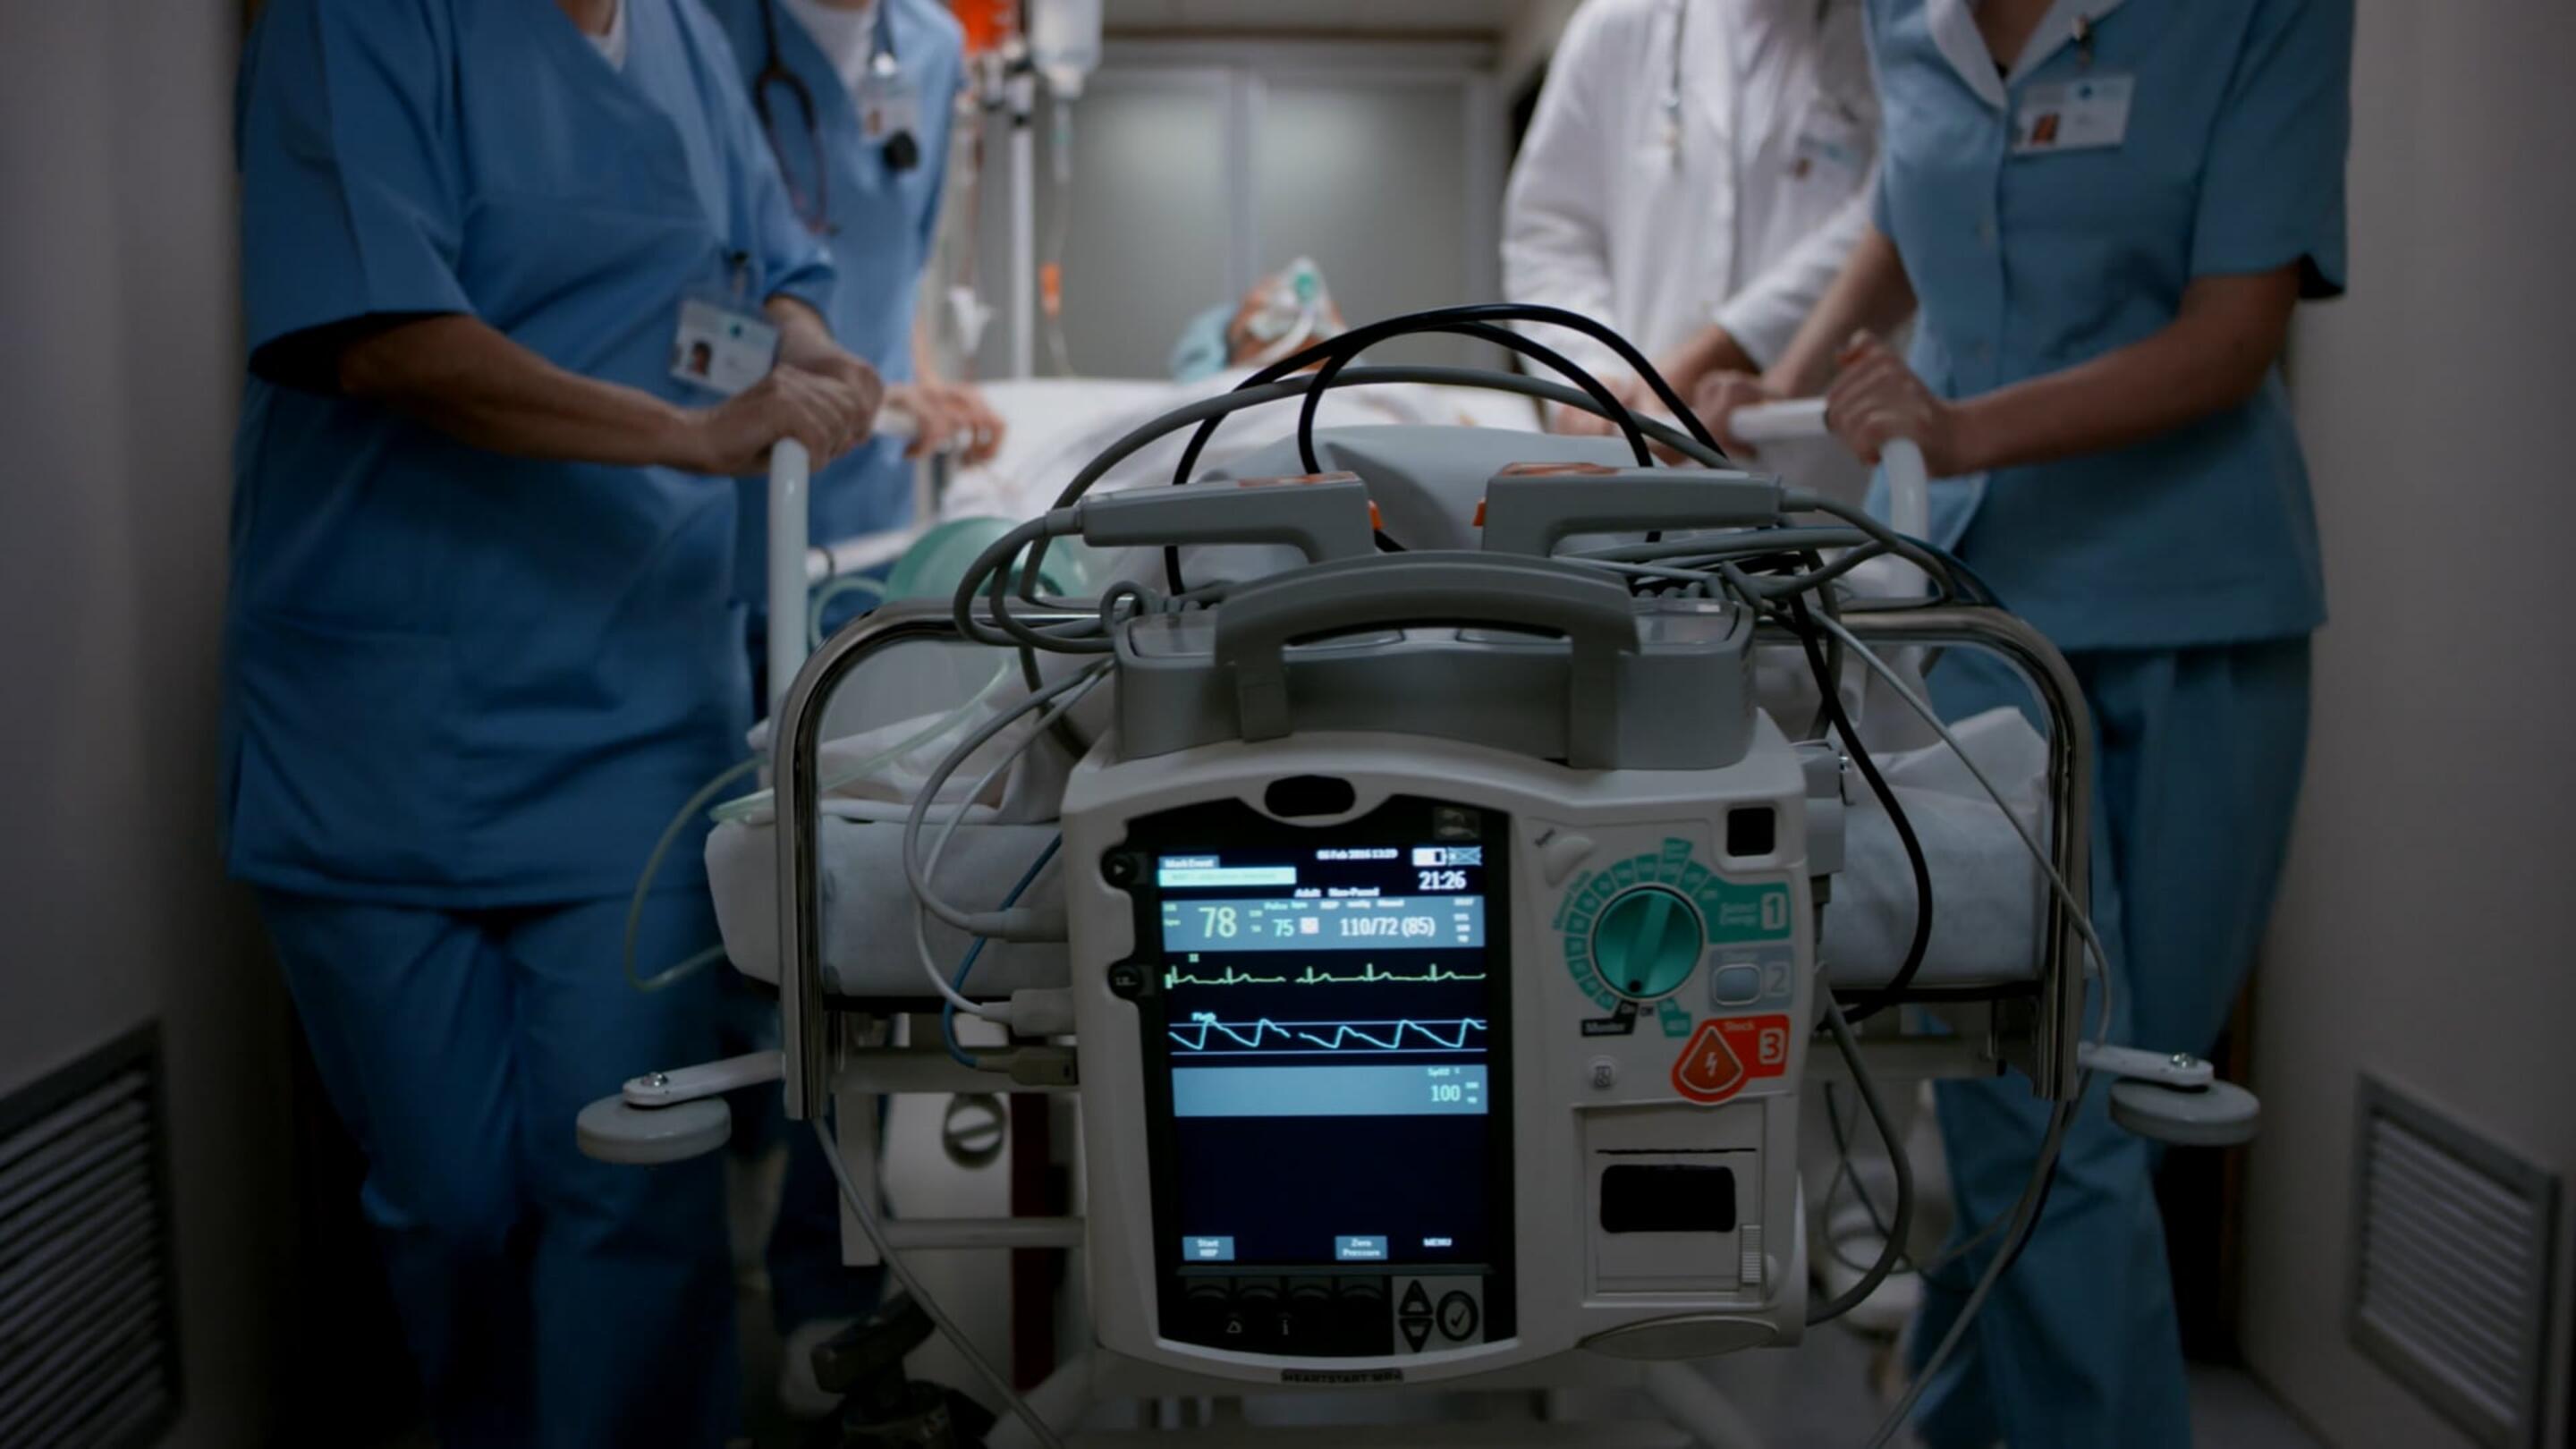 Medicale - Robusta tecnologia medica, persone mediche in camice che spingono un dispositivo medico